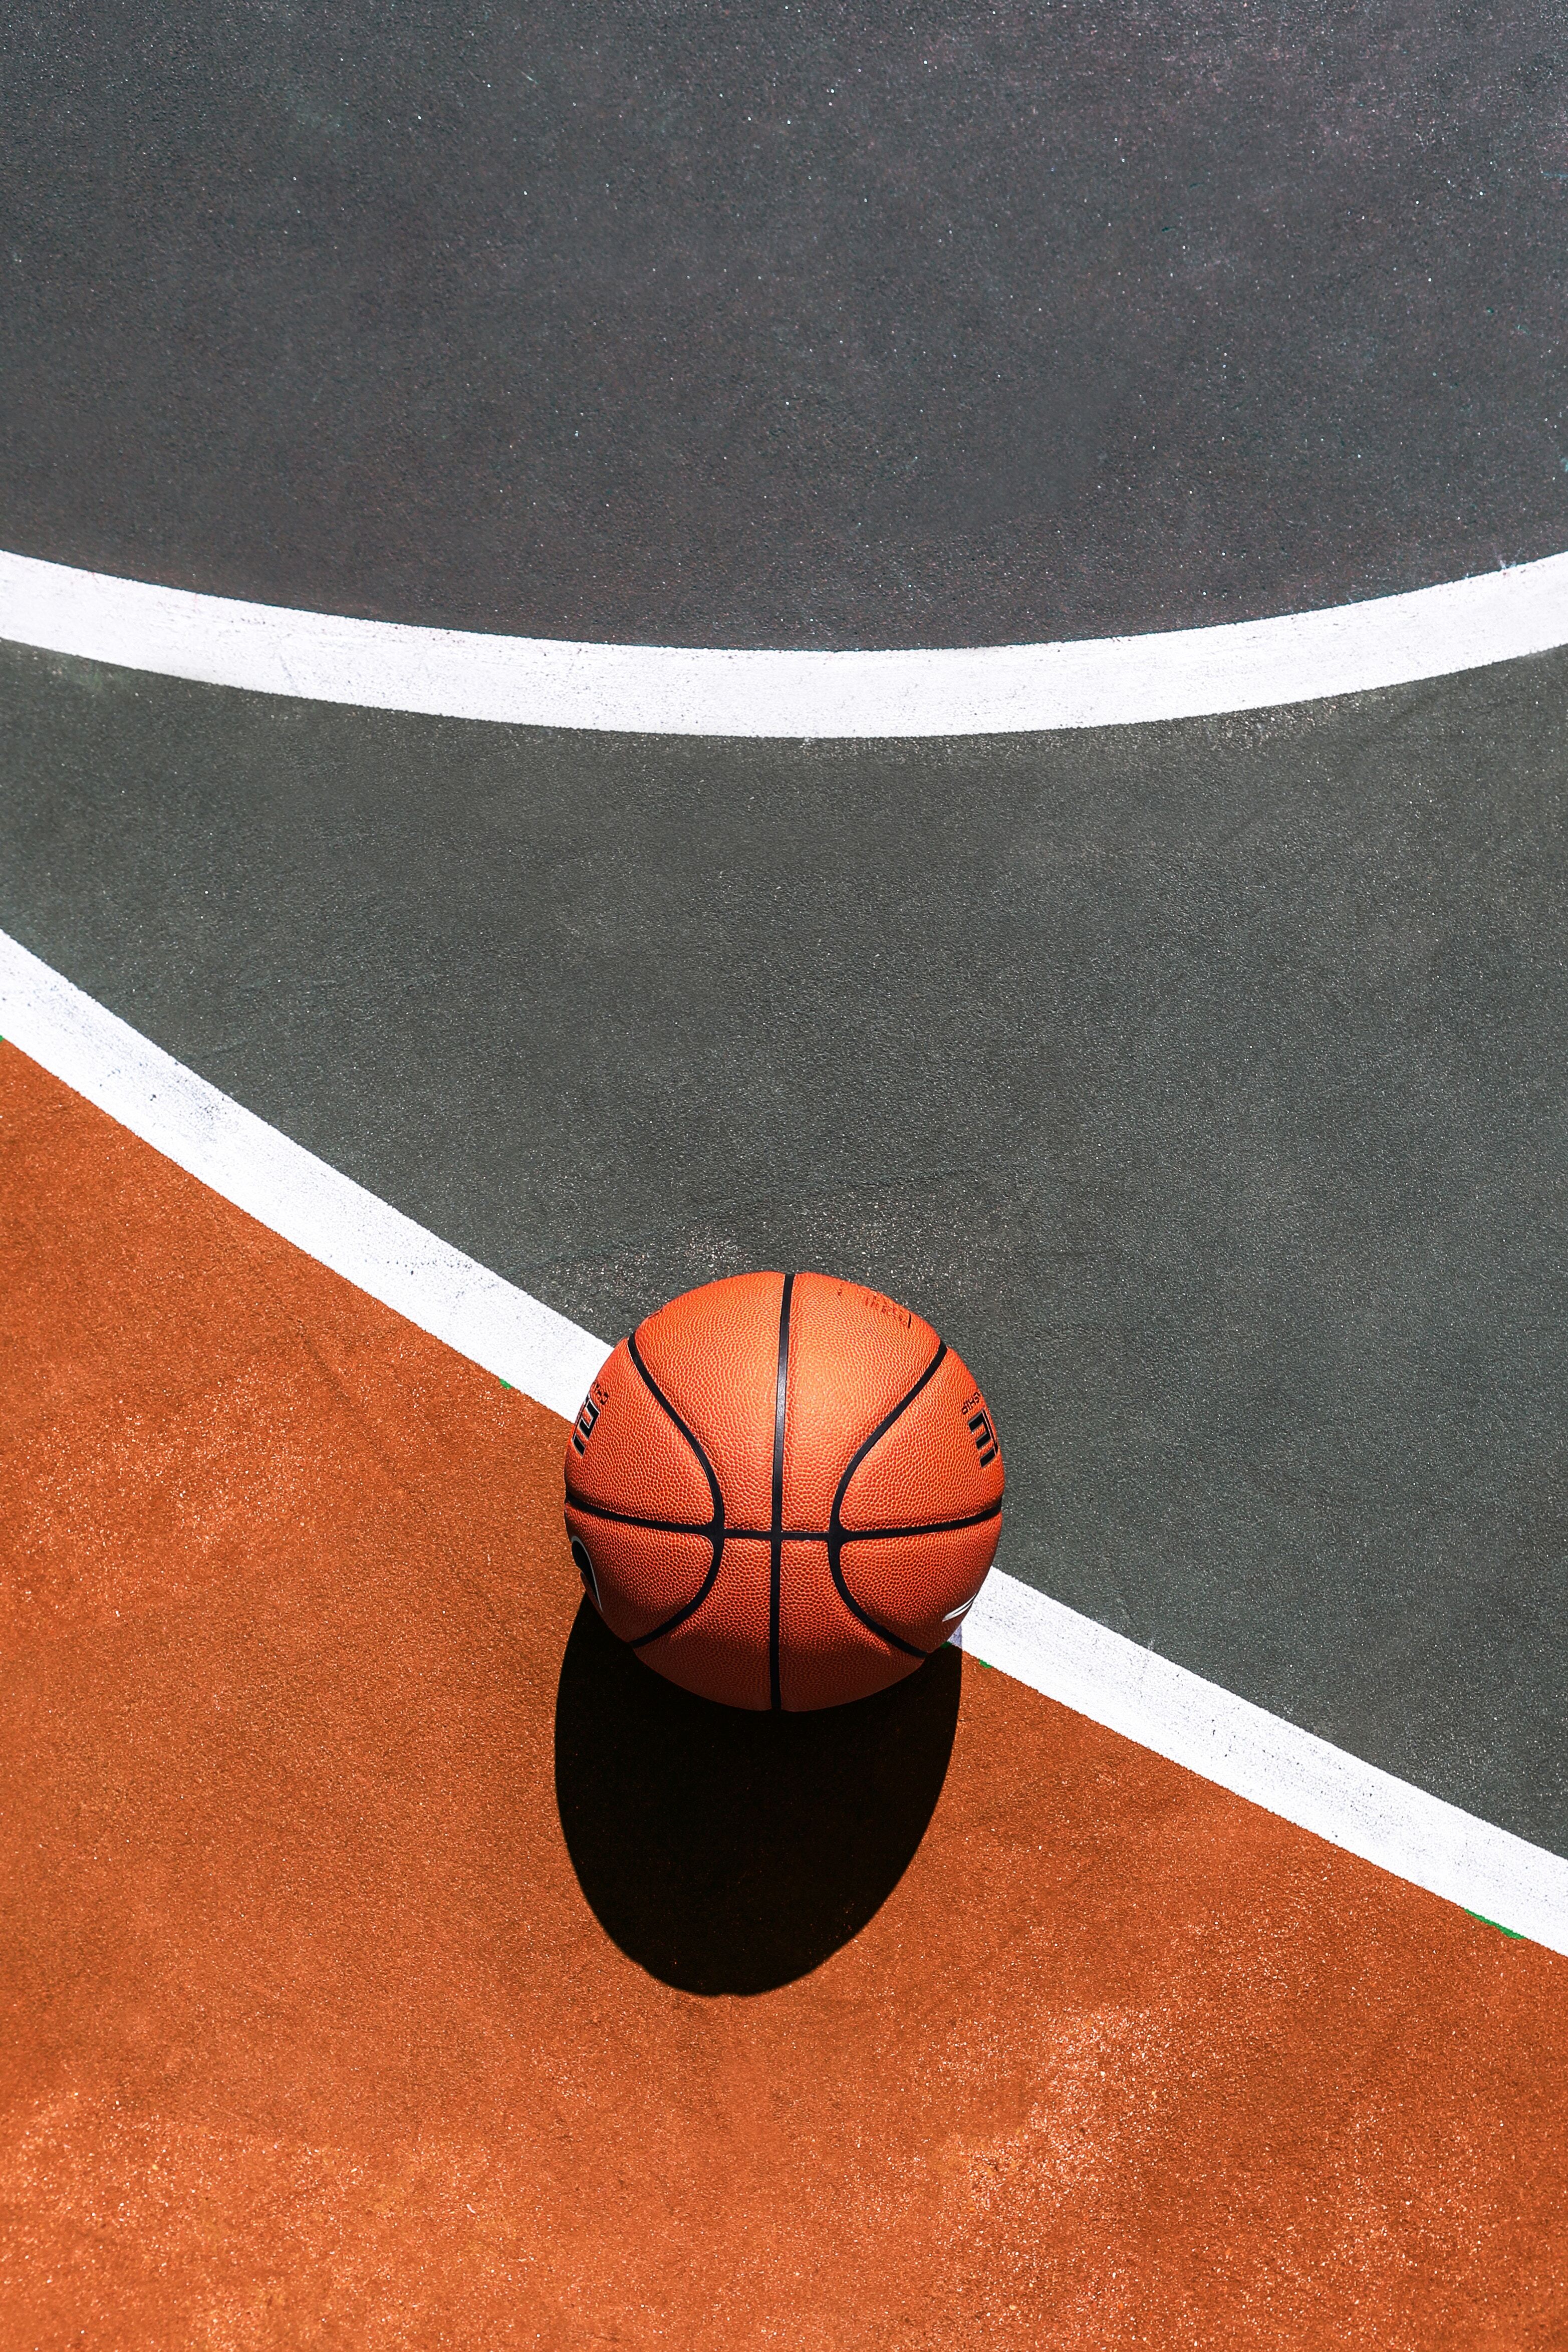 Картинка: Баскетбольный мяч, мяч, спорт, тень, площадка, грунт, линии, цвет, оранжевый, серый